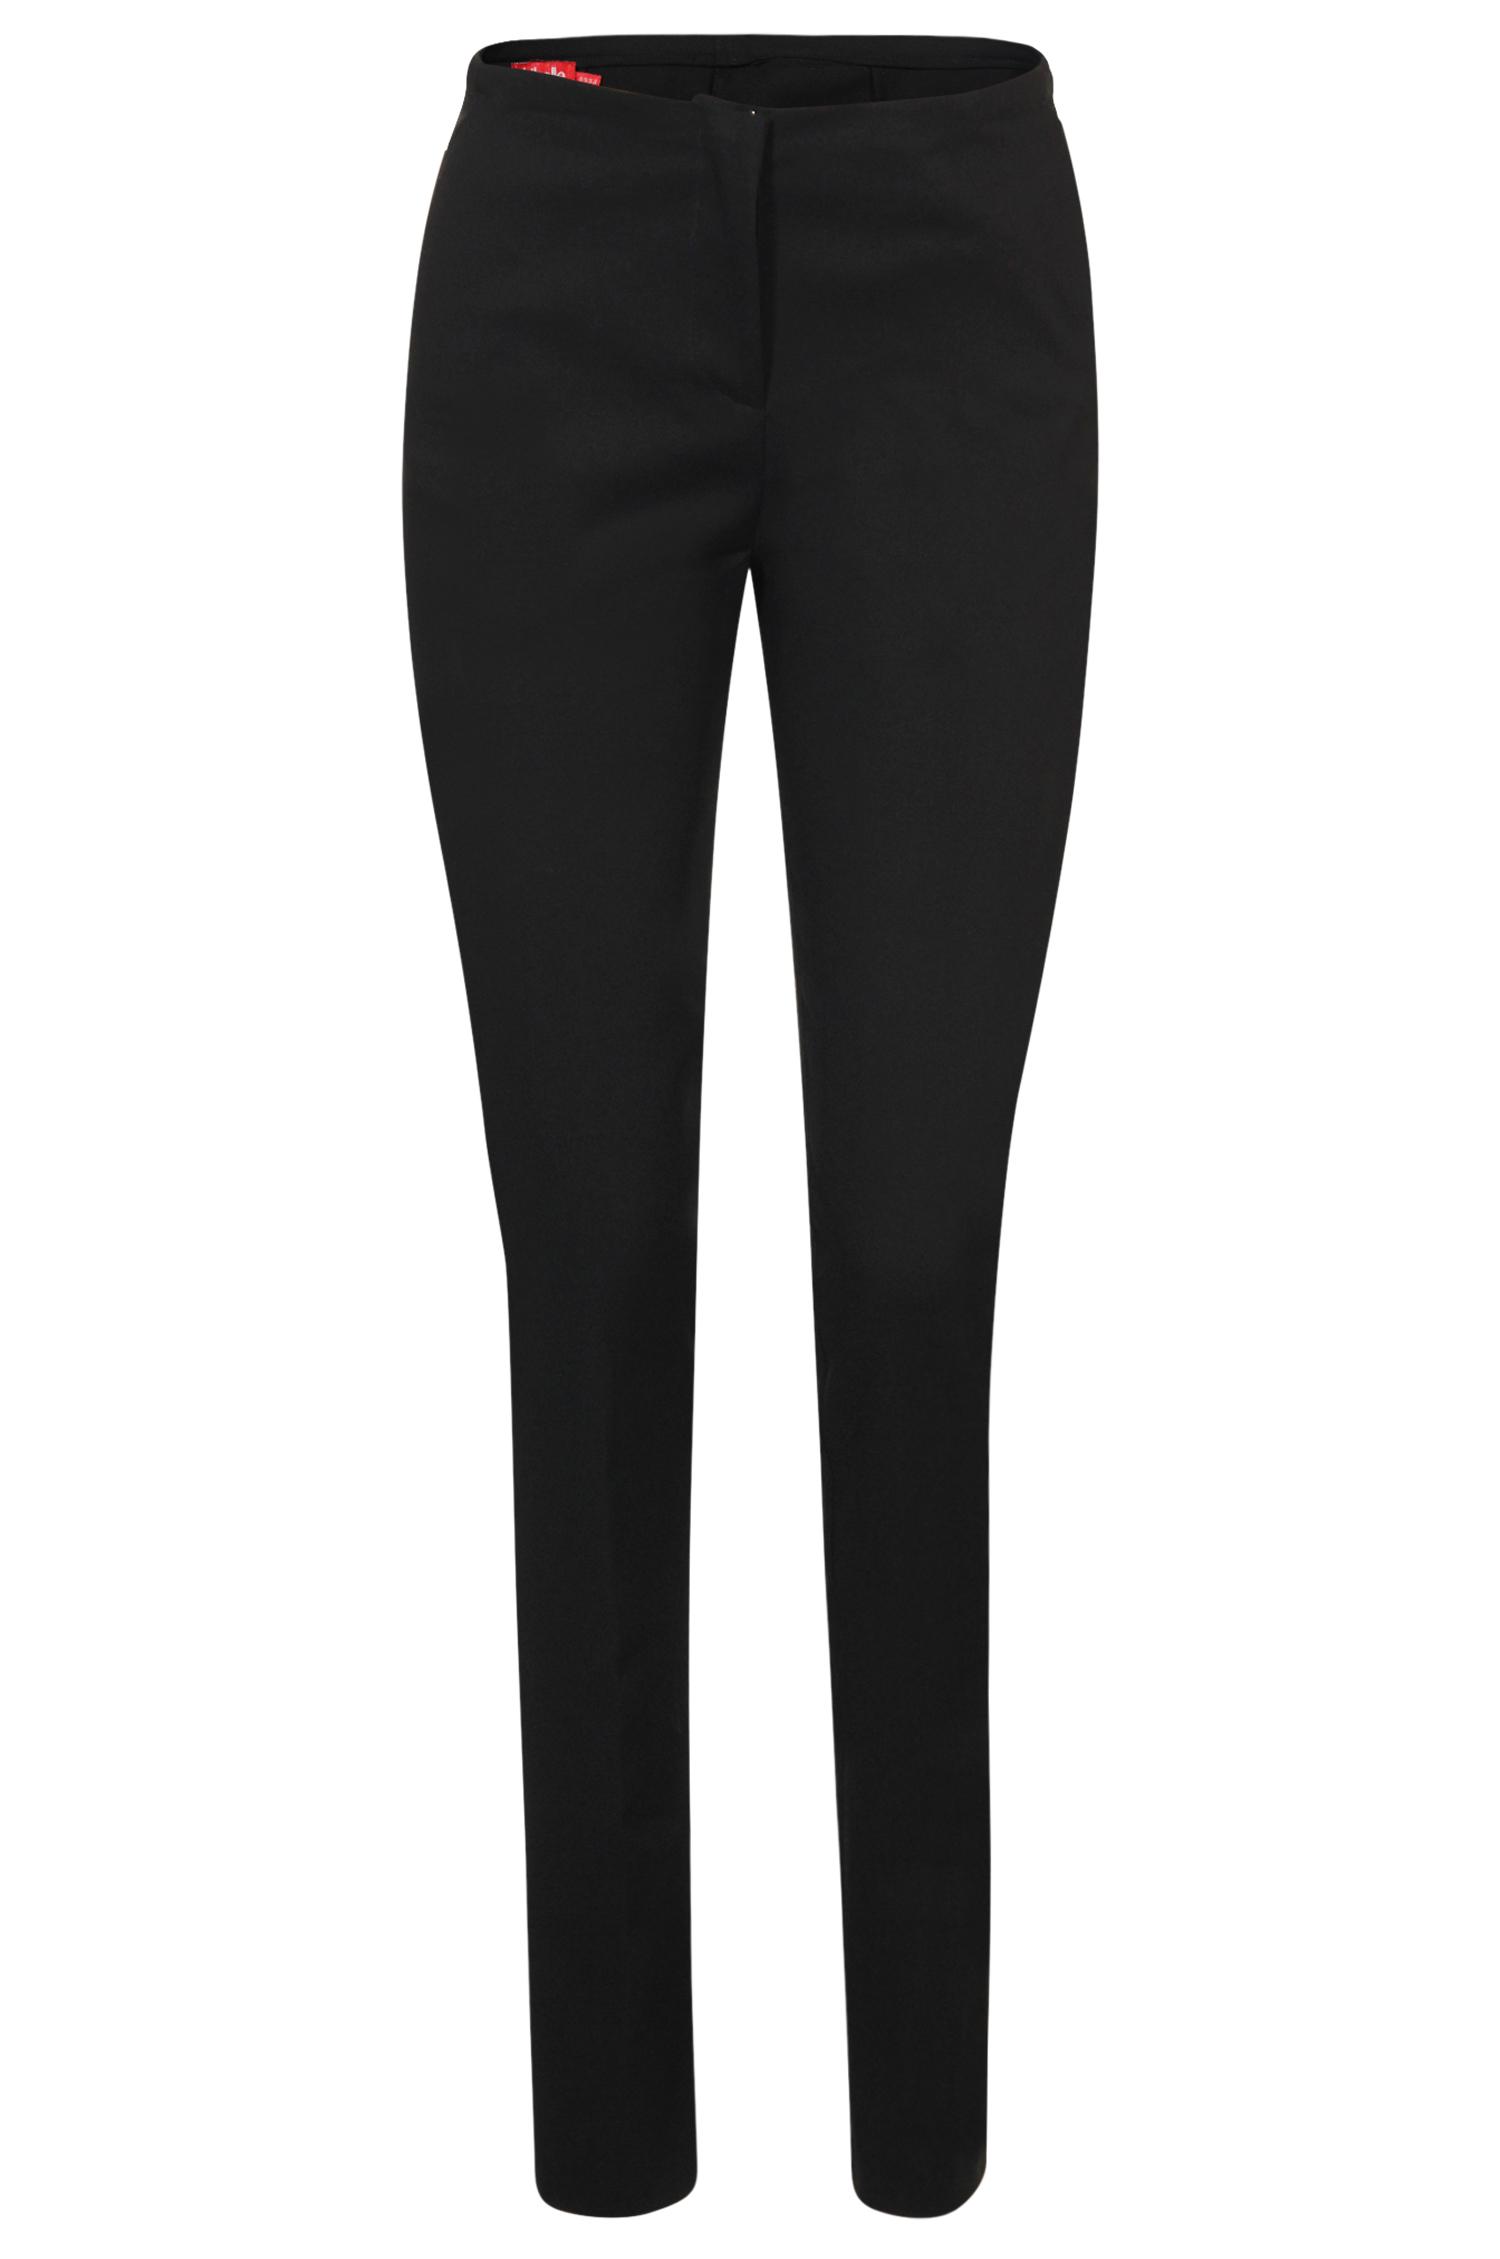 Pantalon noir - 44,95 €